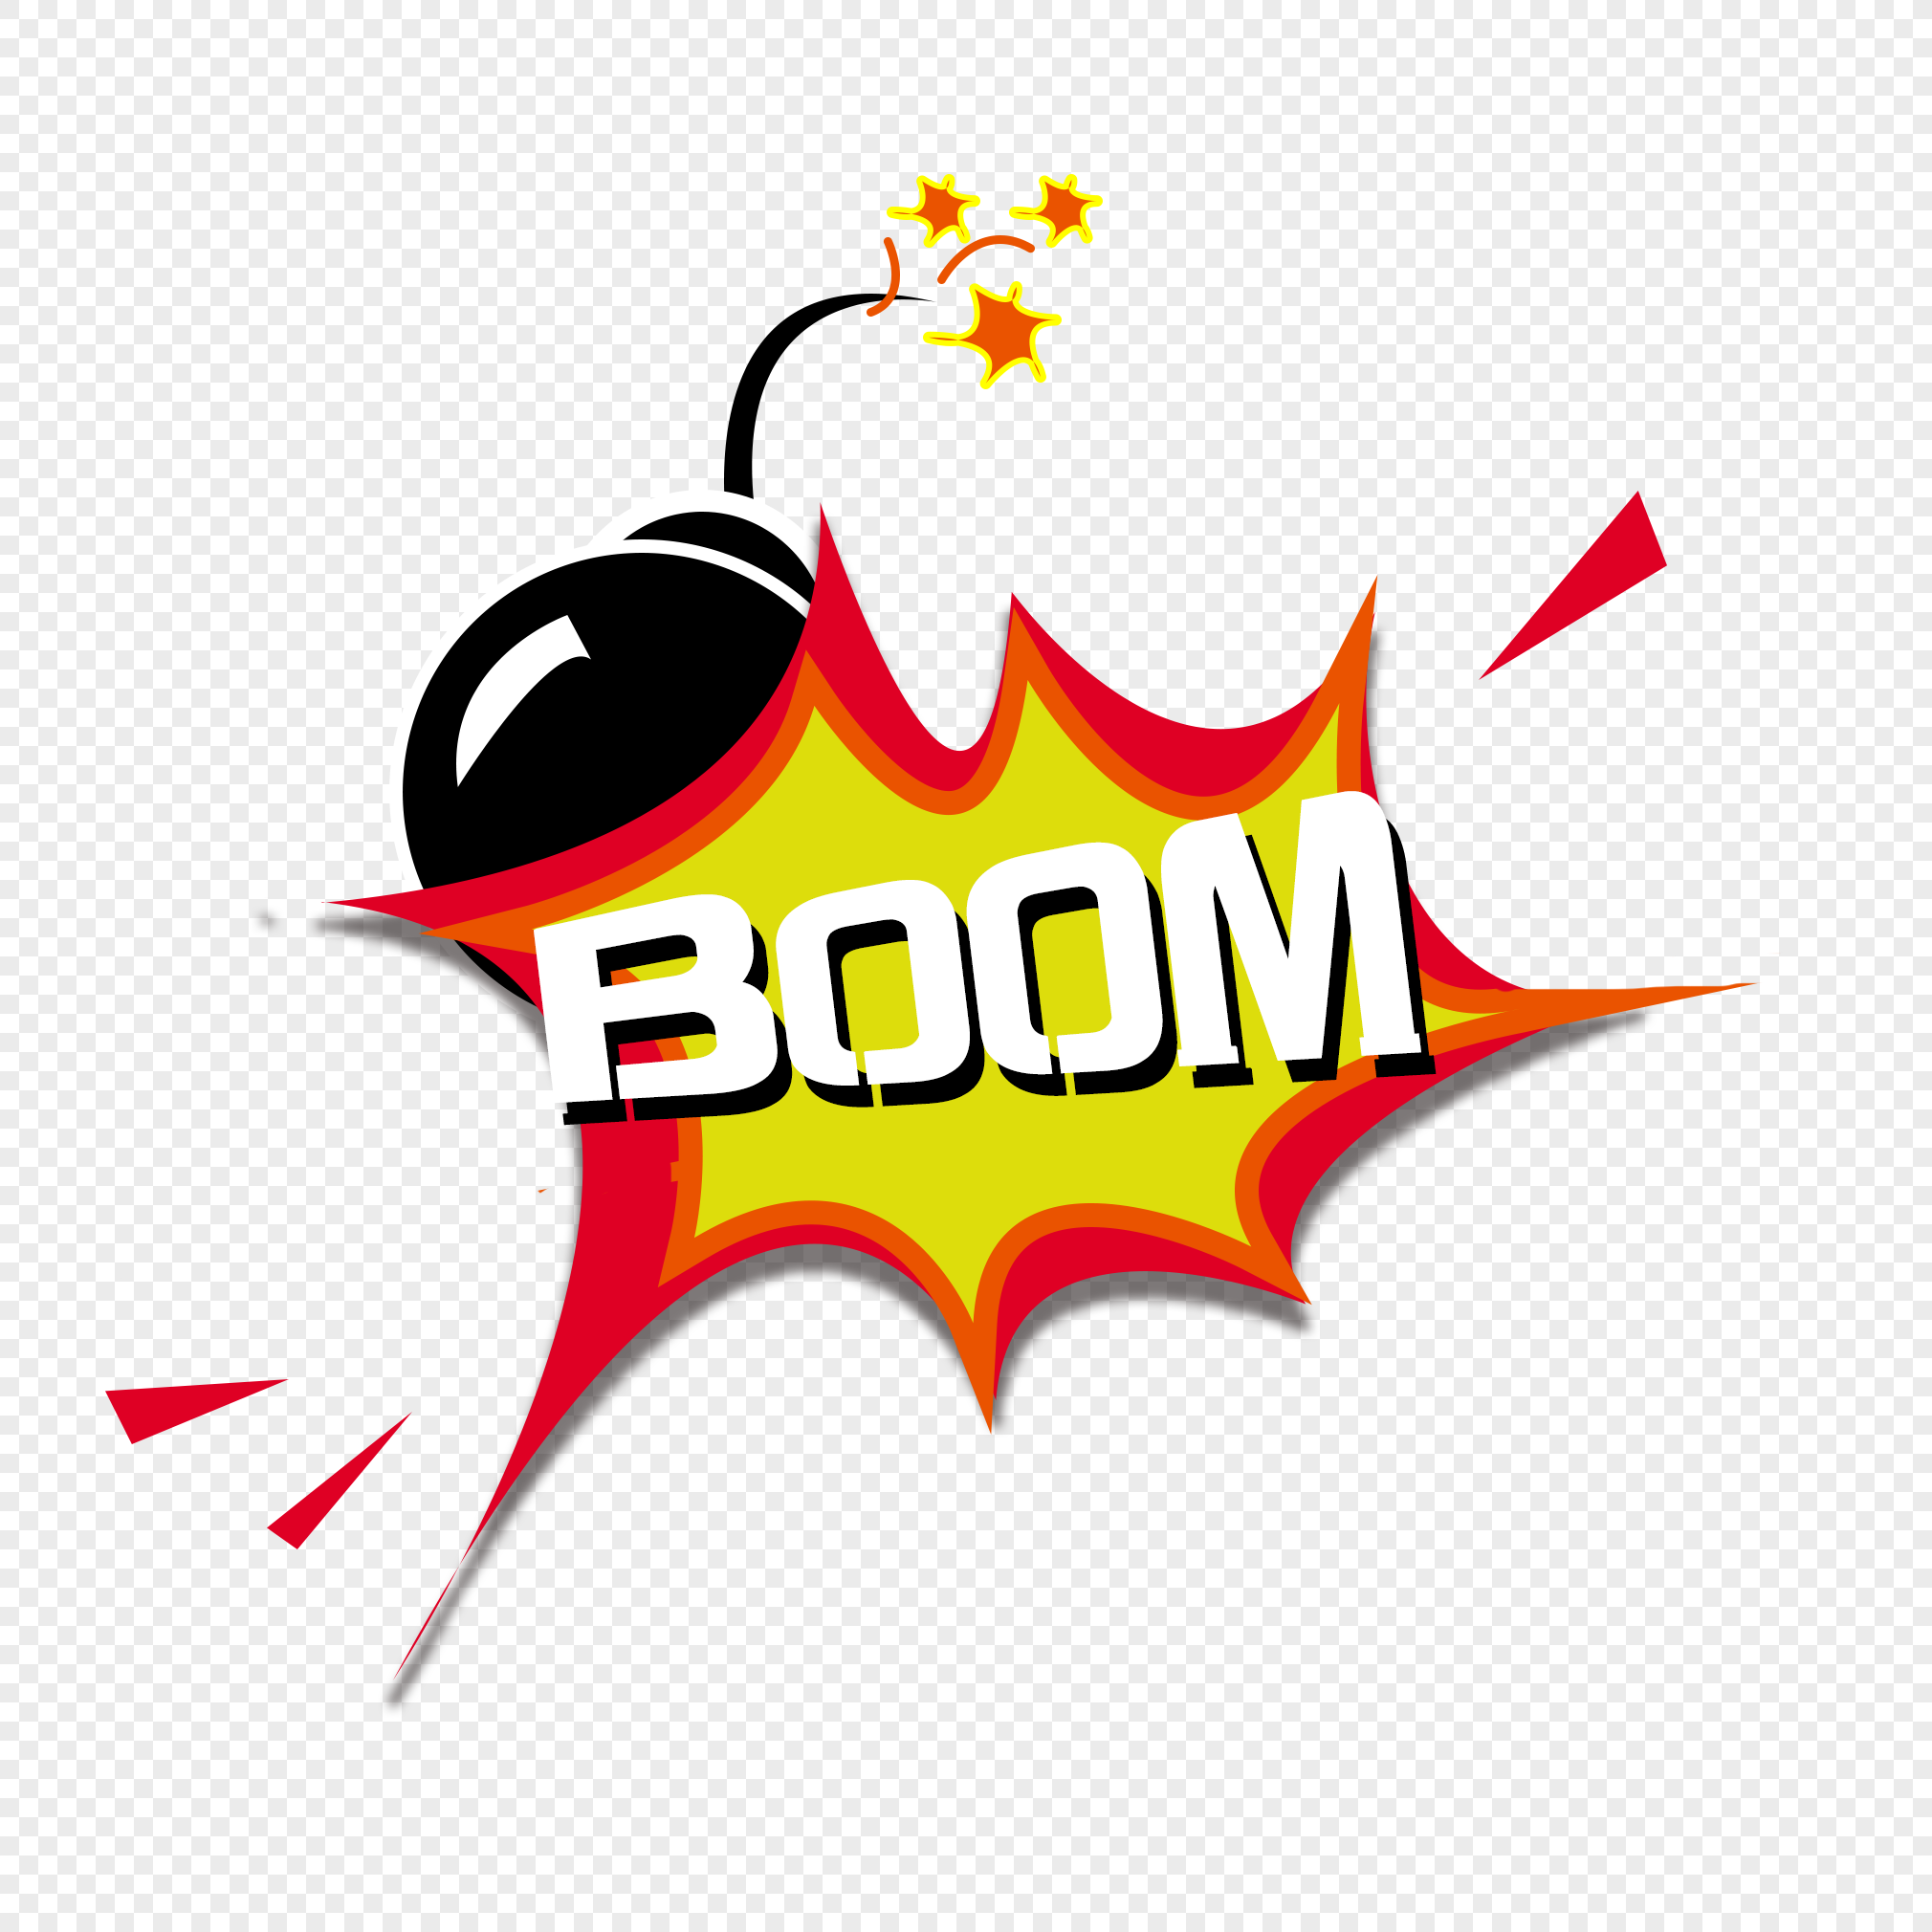 Logo choco boom / logofolio / logo desing on Behance | Logo desing,  Chocolate logo, Sweet logo